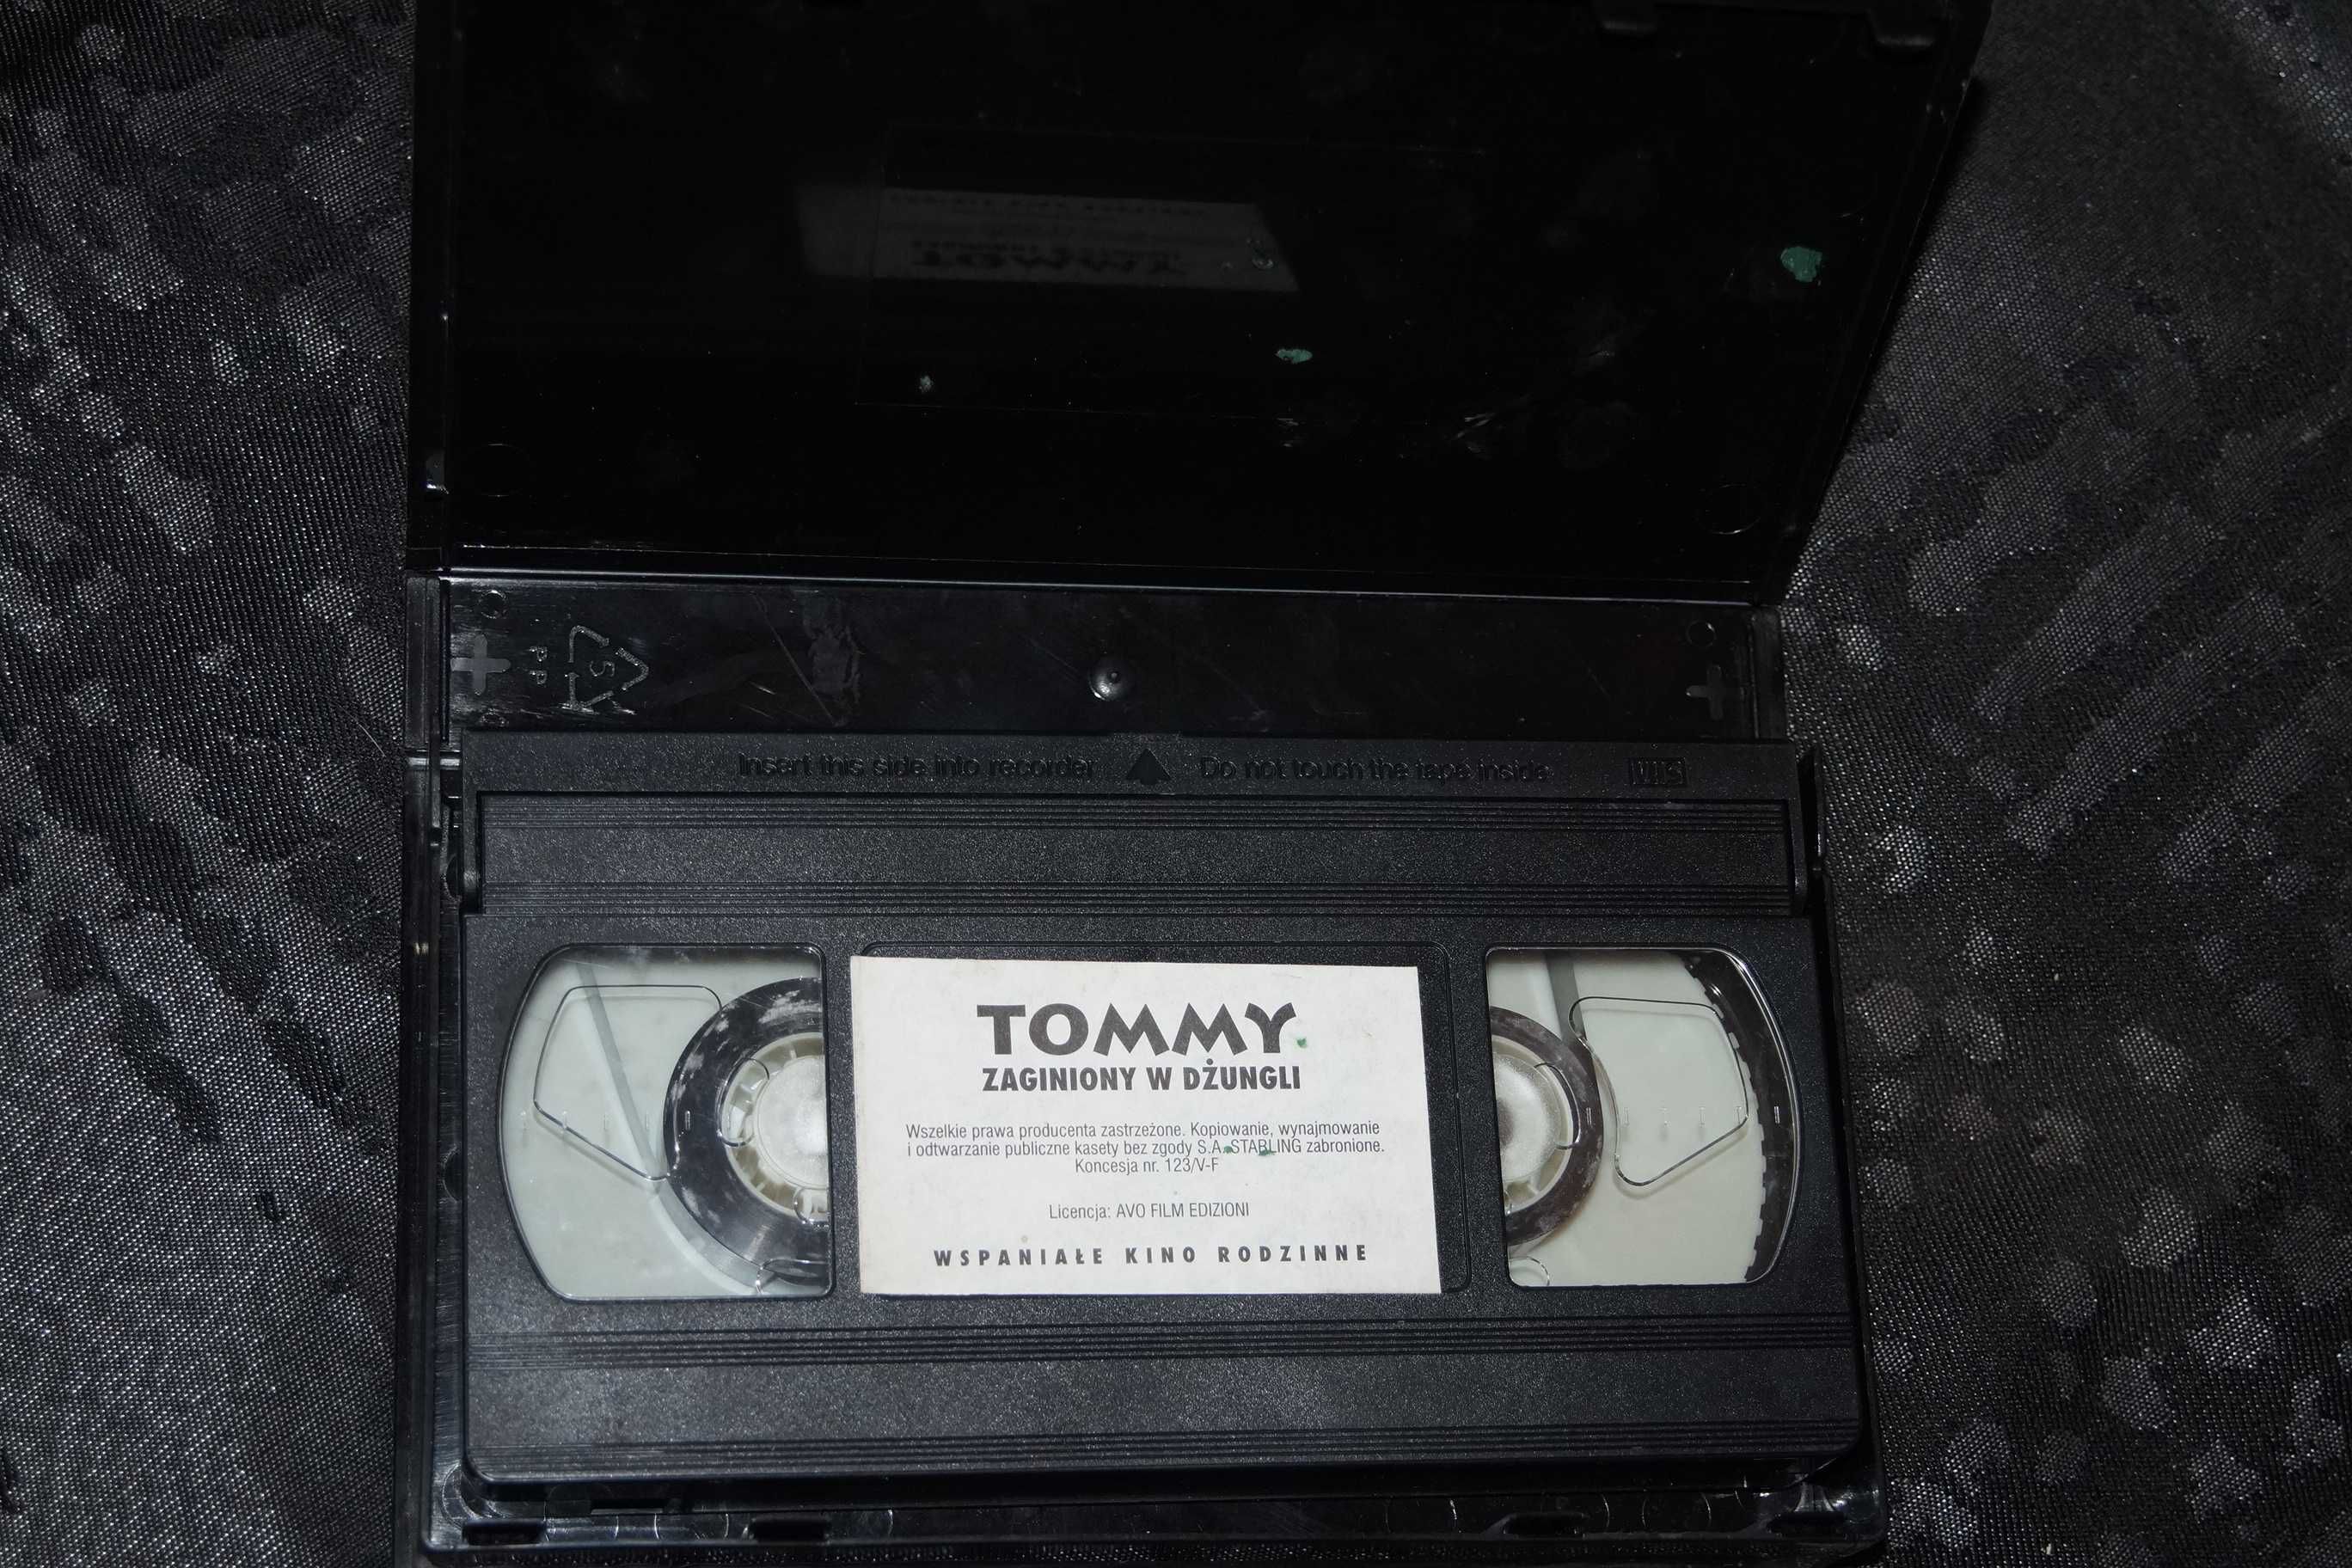 Tommy zaginiony w dżungli kaseta VHS video